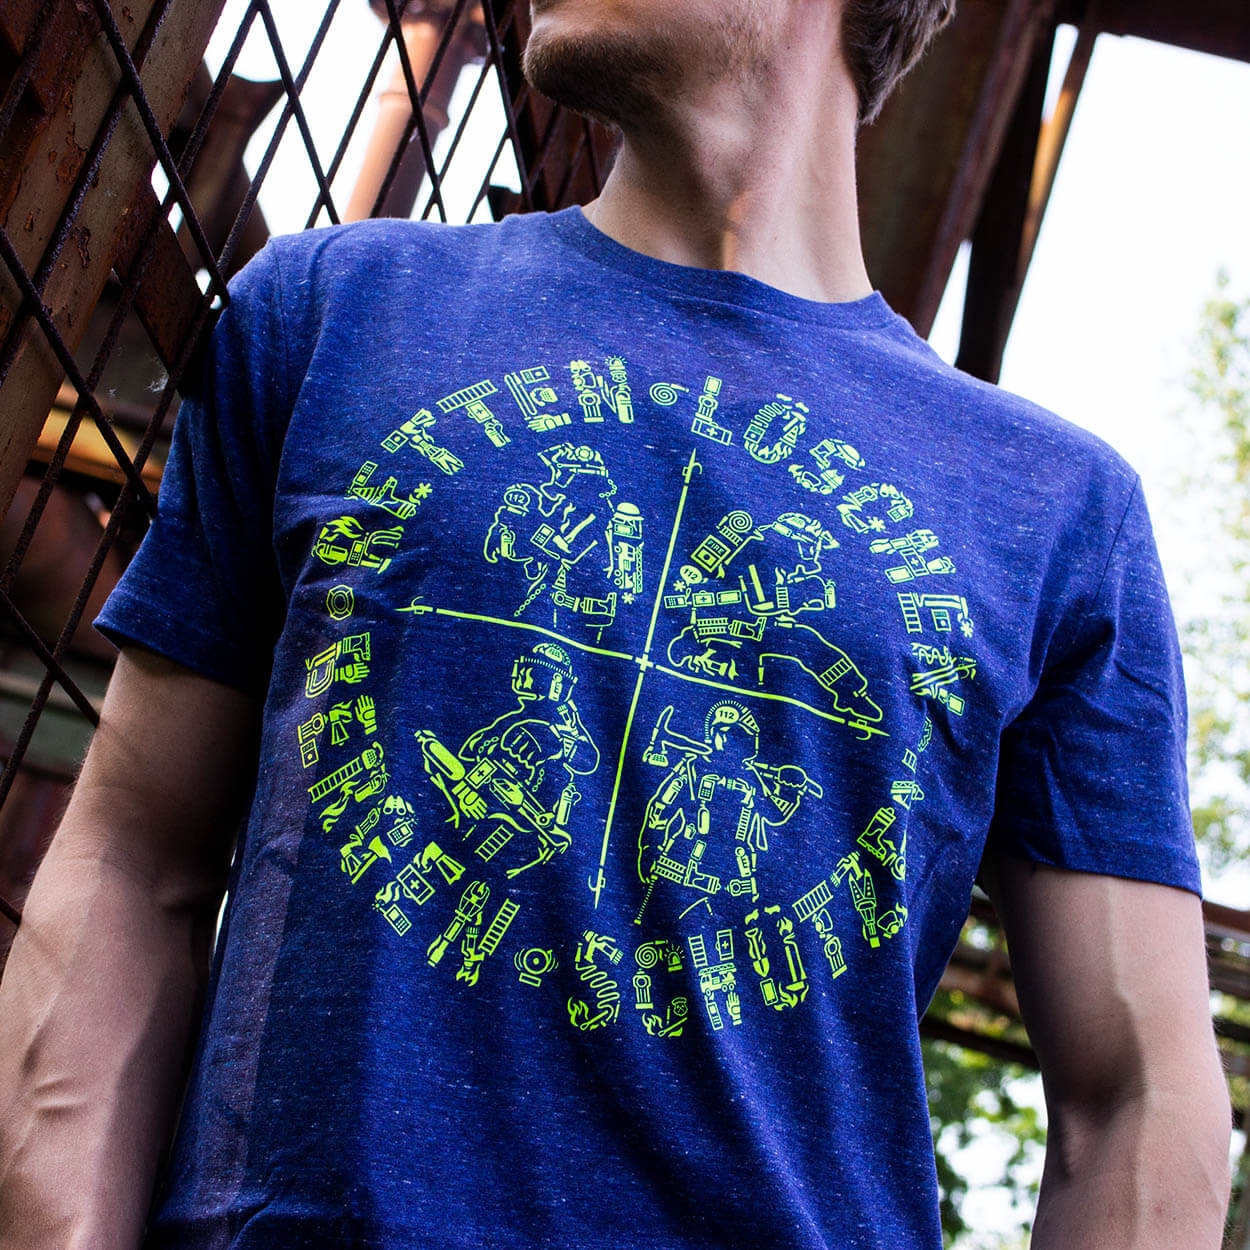 Retten Löschen Bergen Schützen - Männer T-Shirt Heather Blue